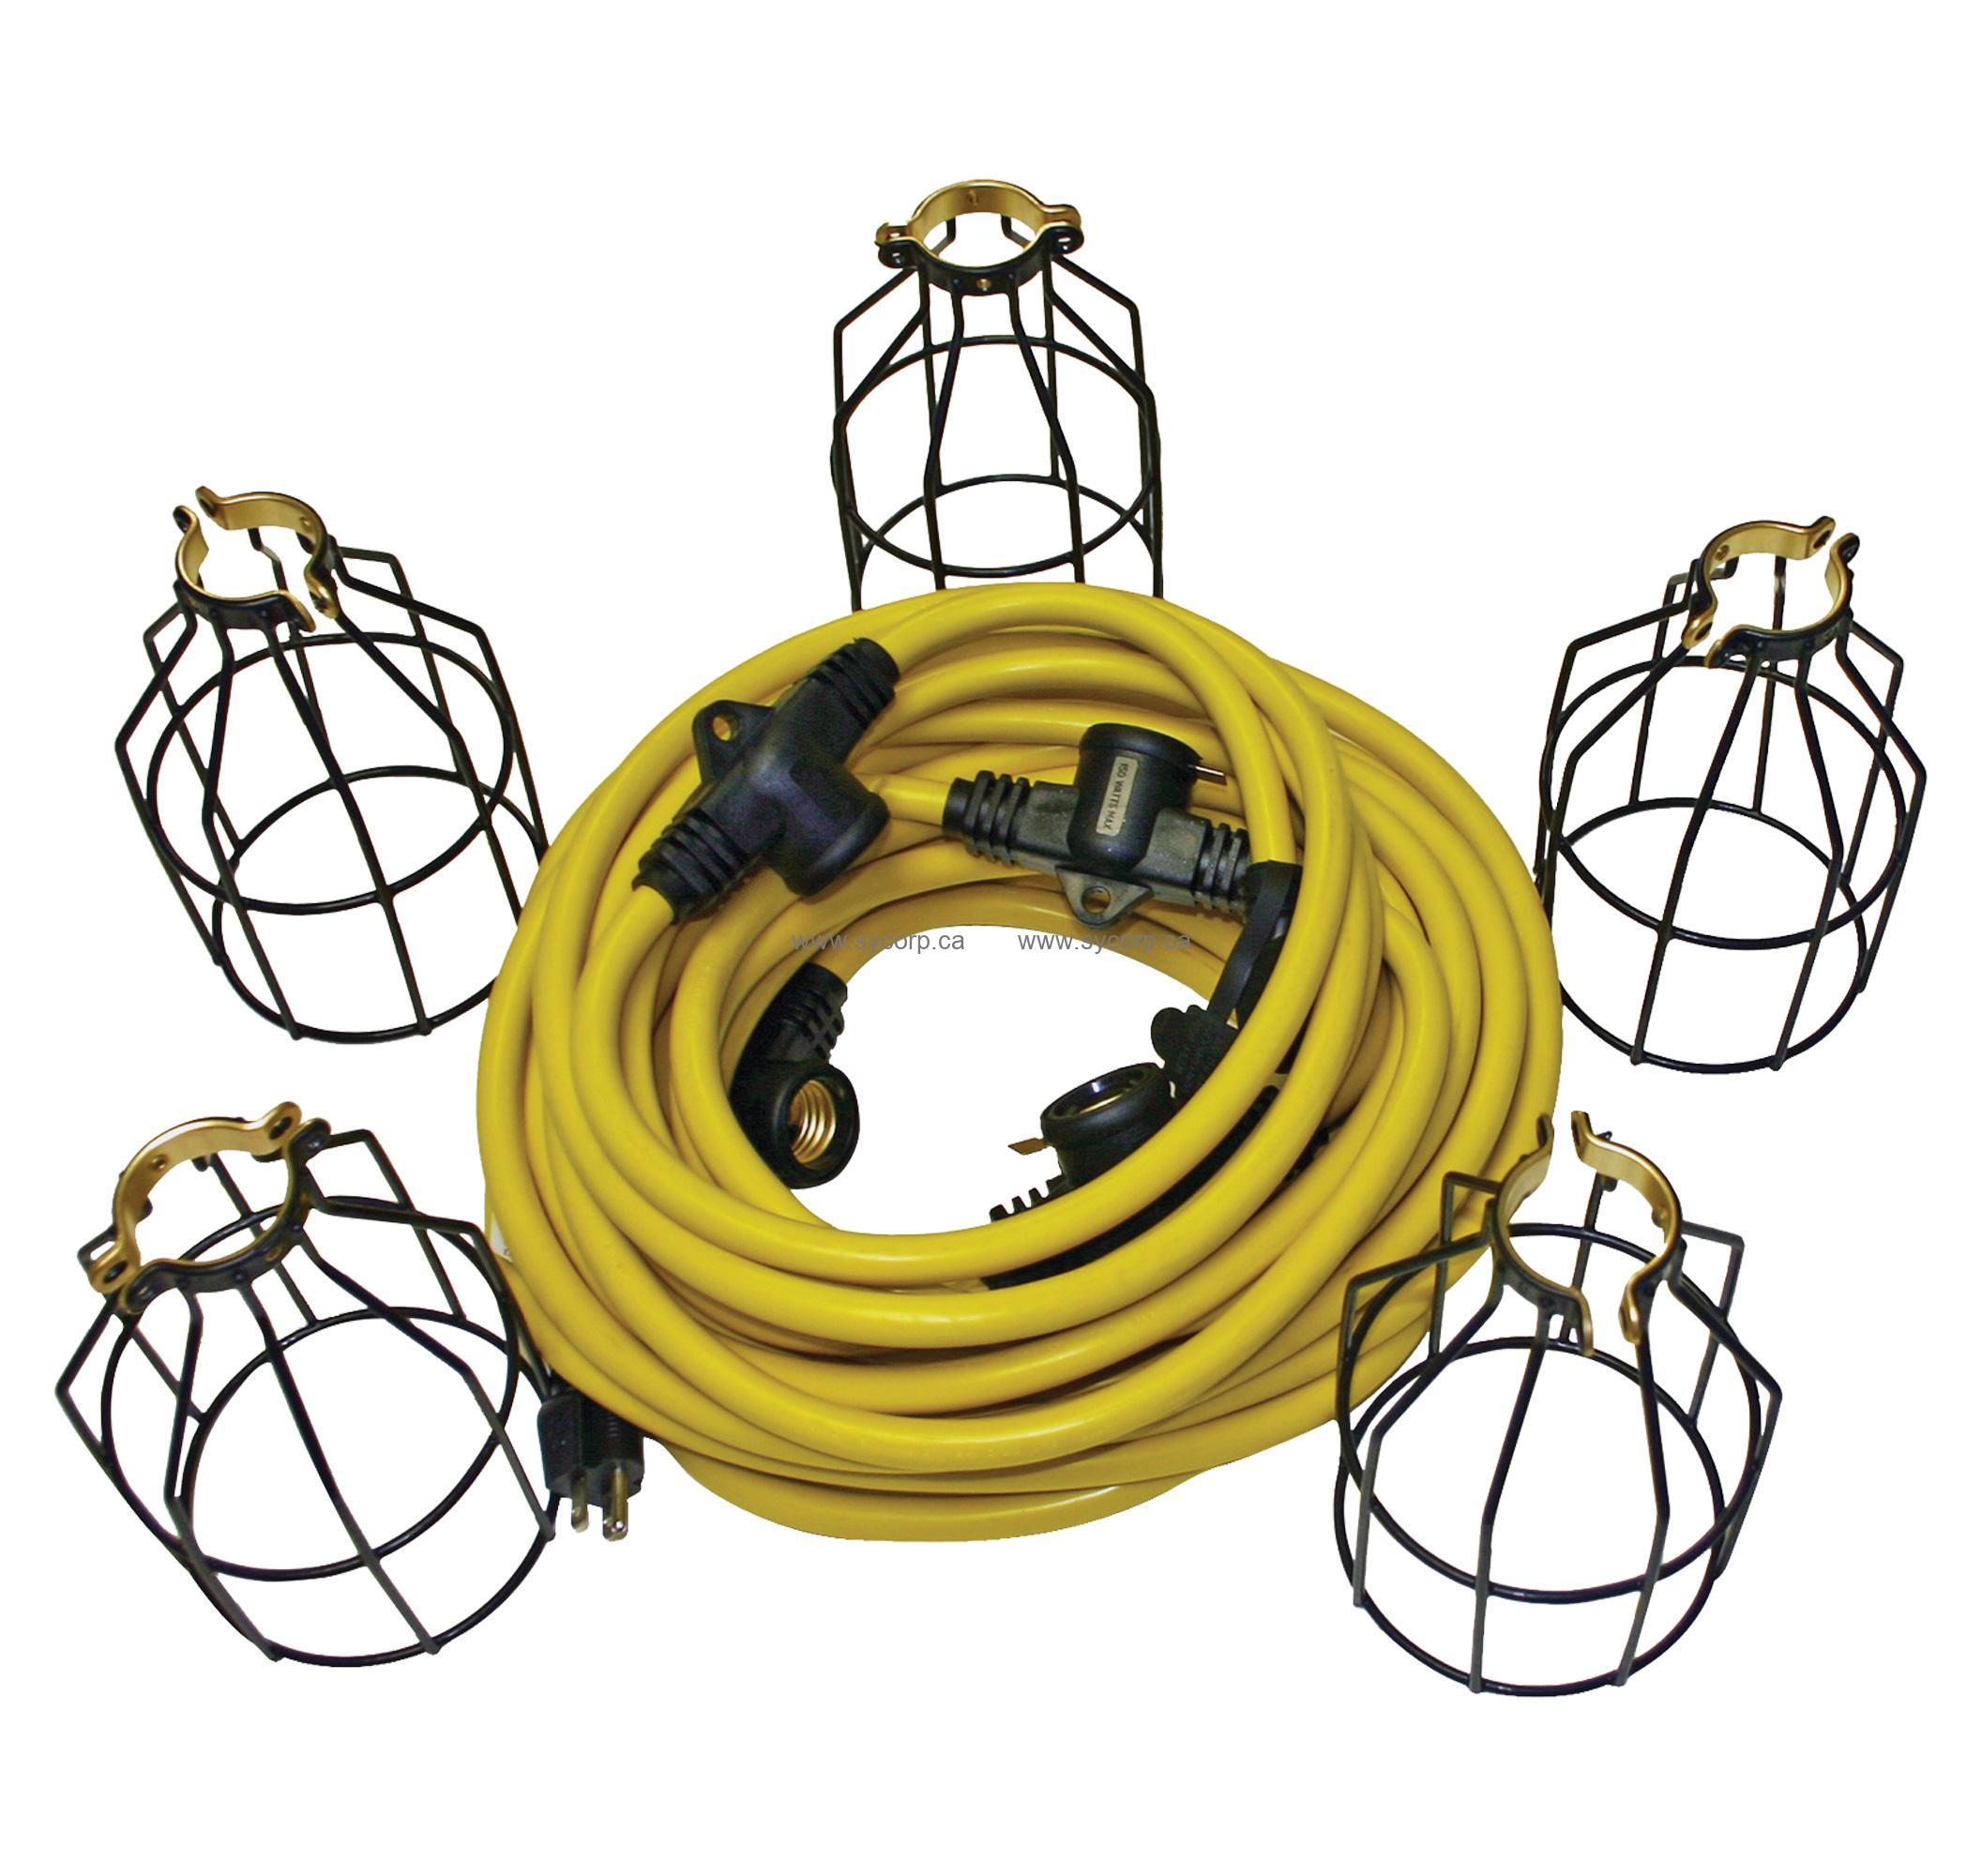 Unex String Work Lights, 50ft, 5 Steel Cage Sockets, 12/3 SJTW